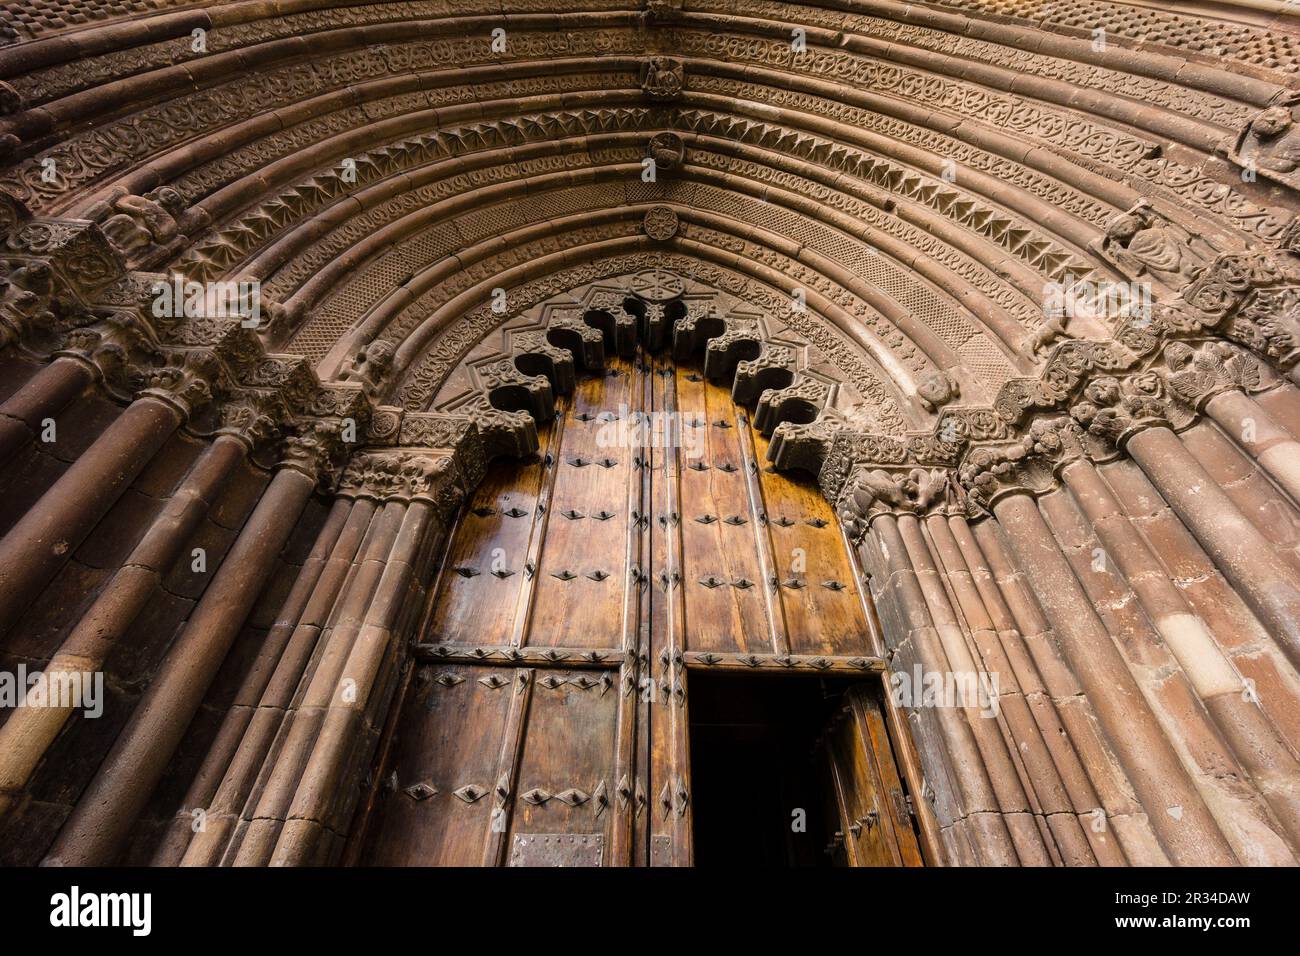 portada ojival y arquería polilobulada, iglesia de San Román, edificada hacia 1200, Cirauqui, comunidad foral de Navarra, Spain. Stock Photo